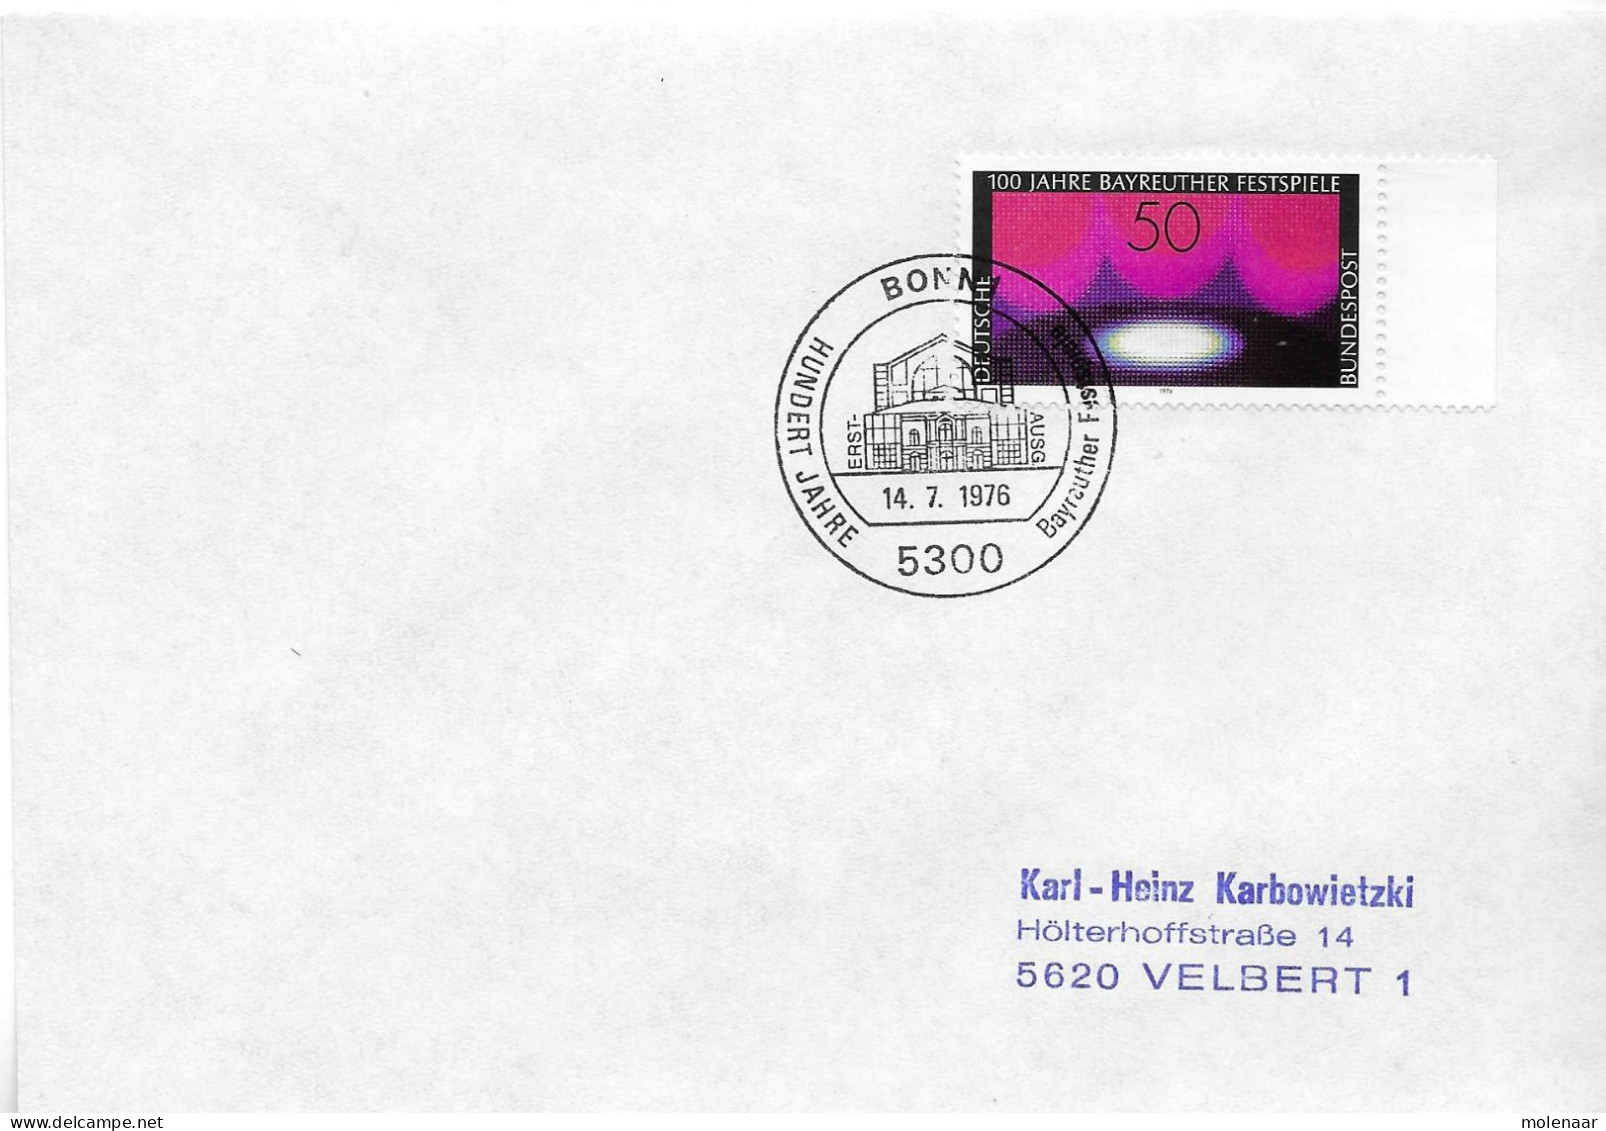 Postzegels > Europa > Duitsland > West-Duitsland > 1970-1979 > Brief Met No. 896  (17378) - Briefe U. Dokumente